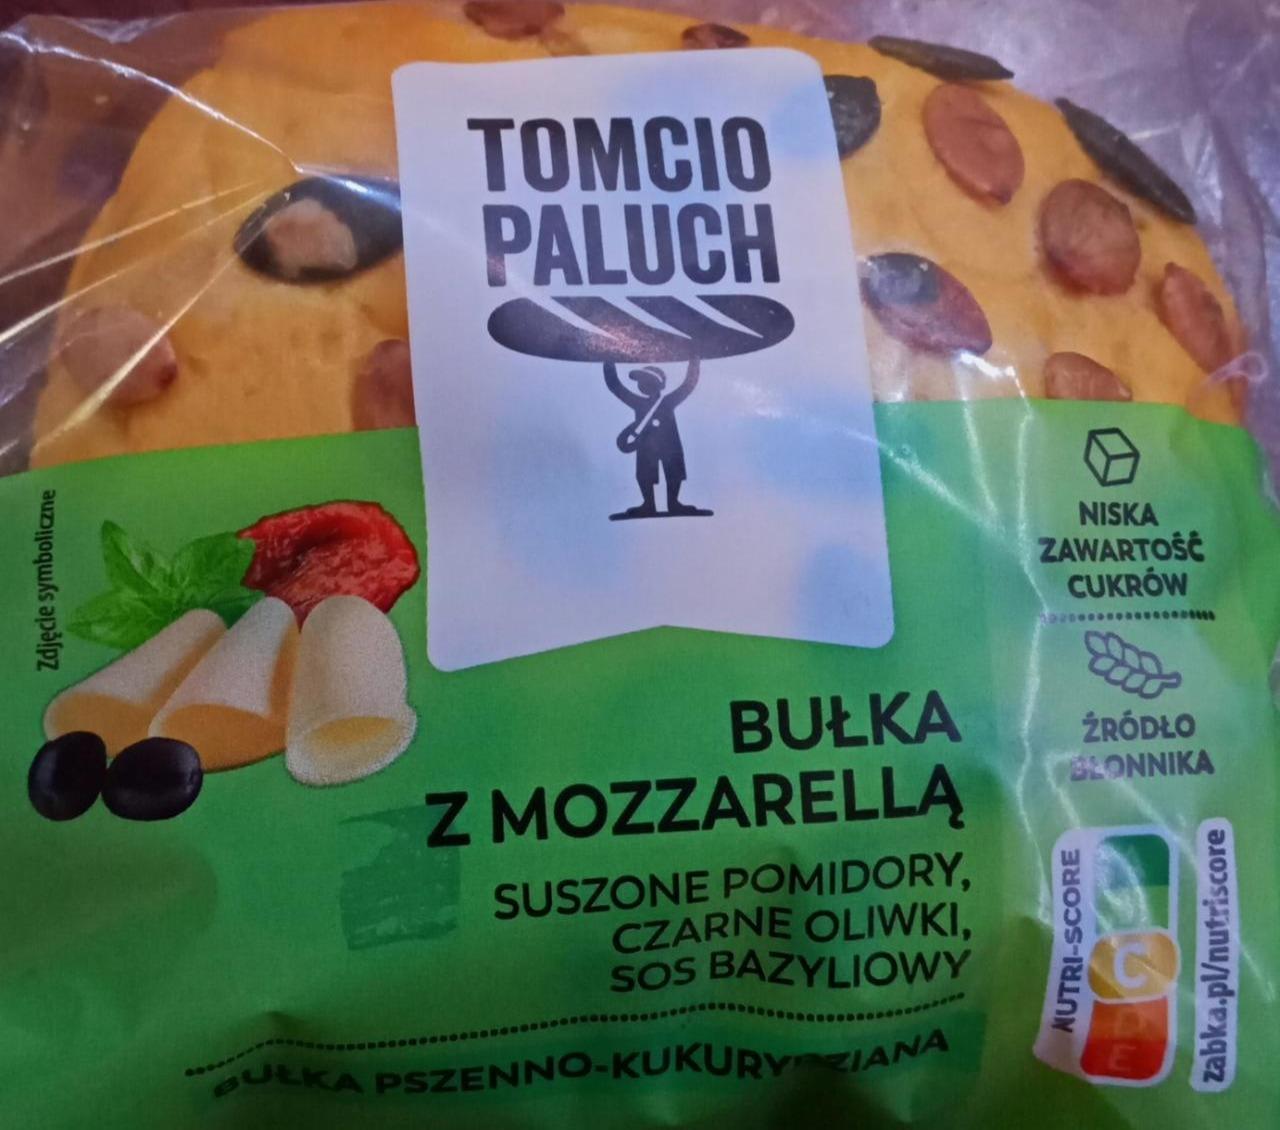 Zdjęcia - Bułka z Mozzarellą suszone pomidory, oliwki i sos bazyliowy Tomcio paluch